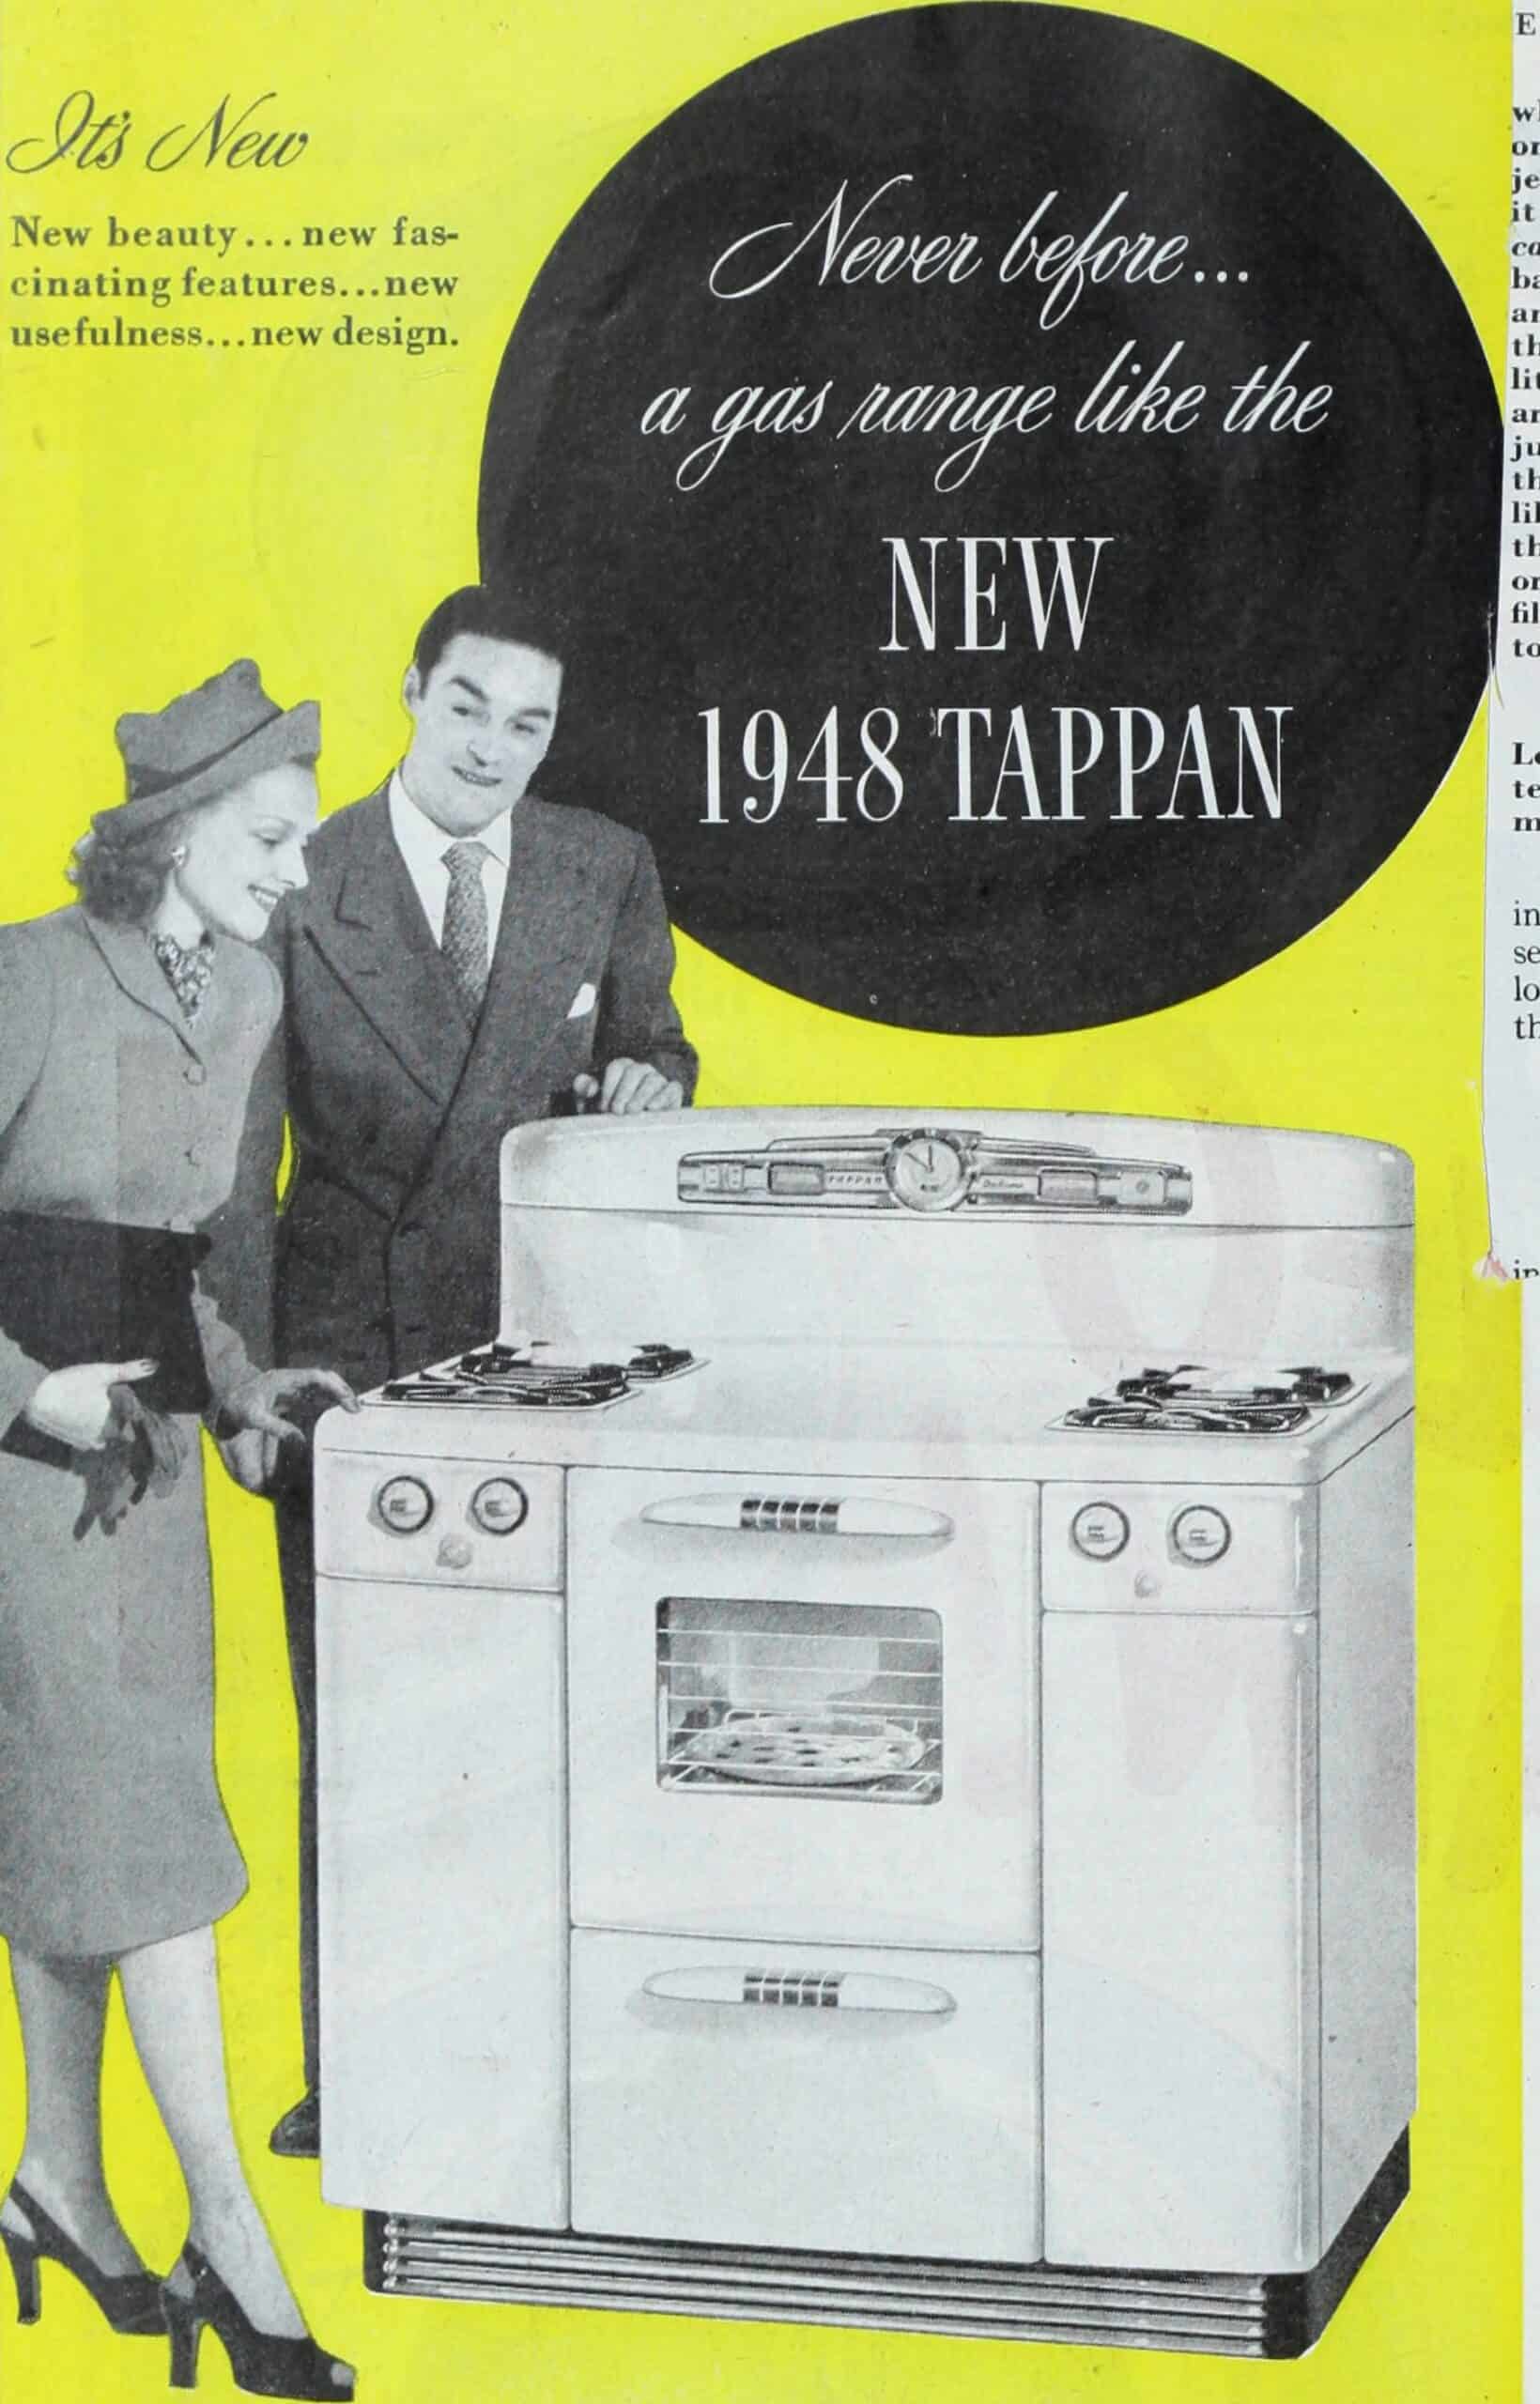 Tappan gas range ad, Ladies' Home Journal 1948